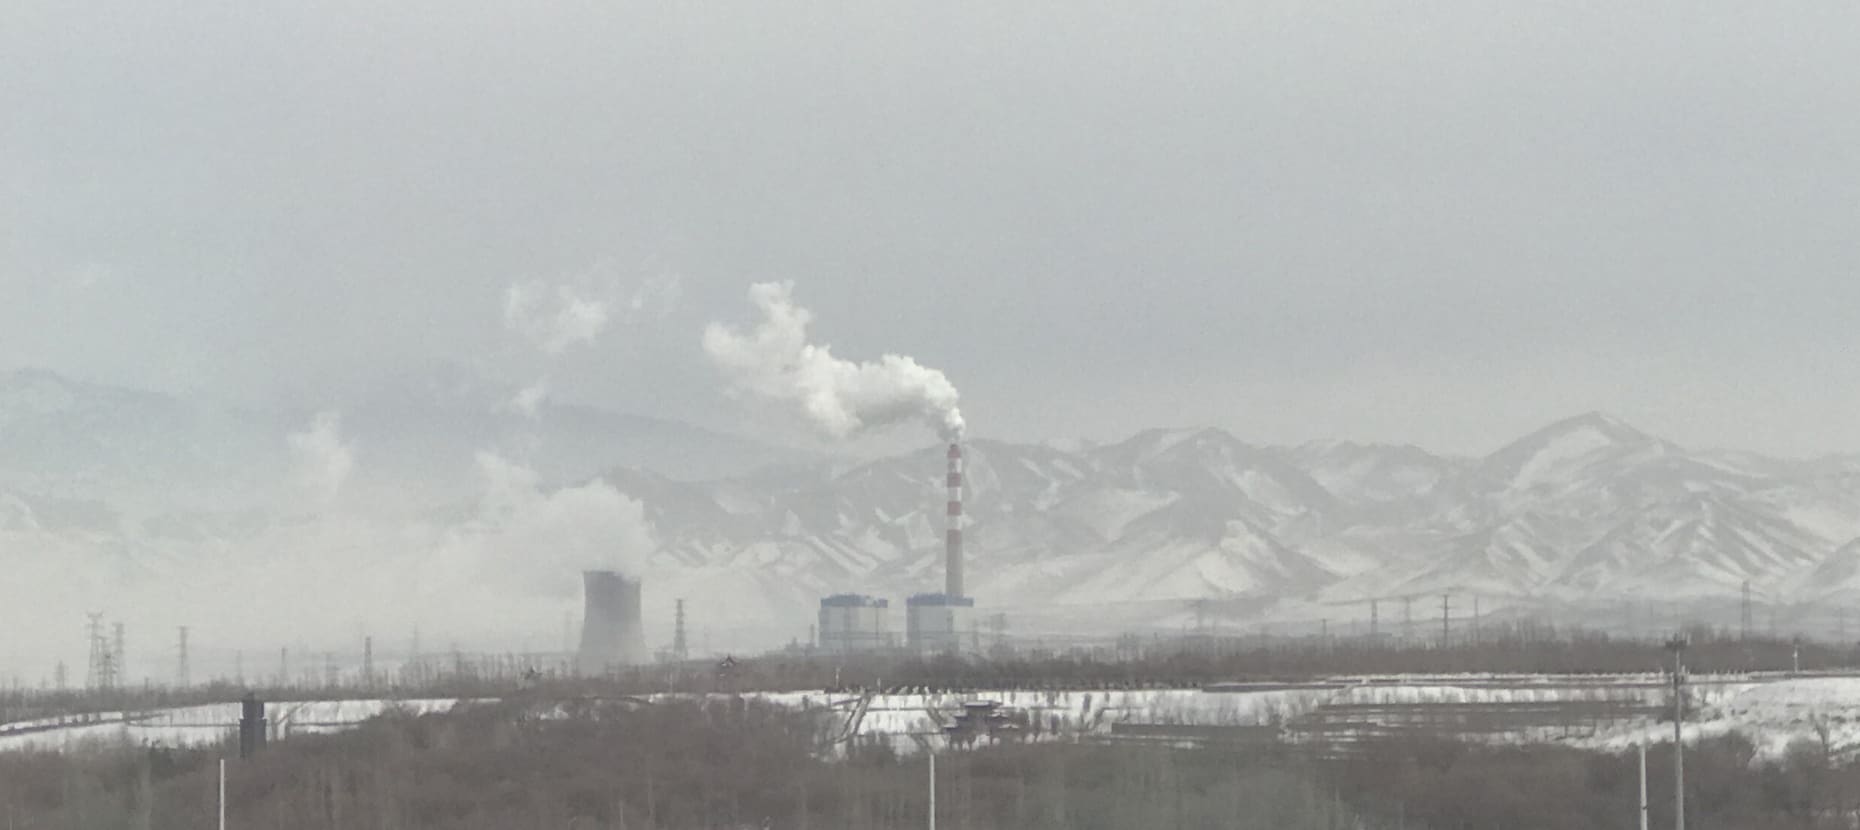 新疆华电红雁池发电有限责任公司#1炉省煤器下灰斗水力除灰改干输灰工程总承包项目